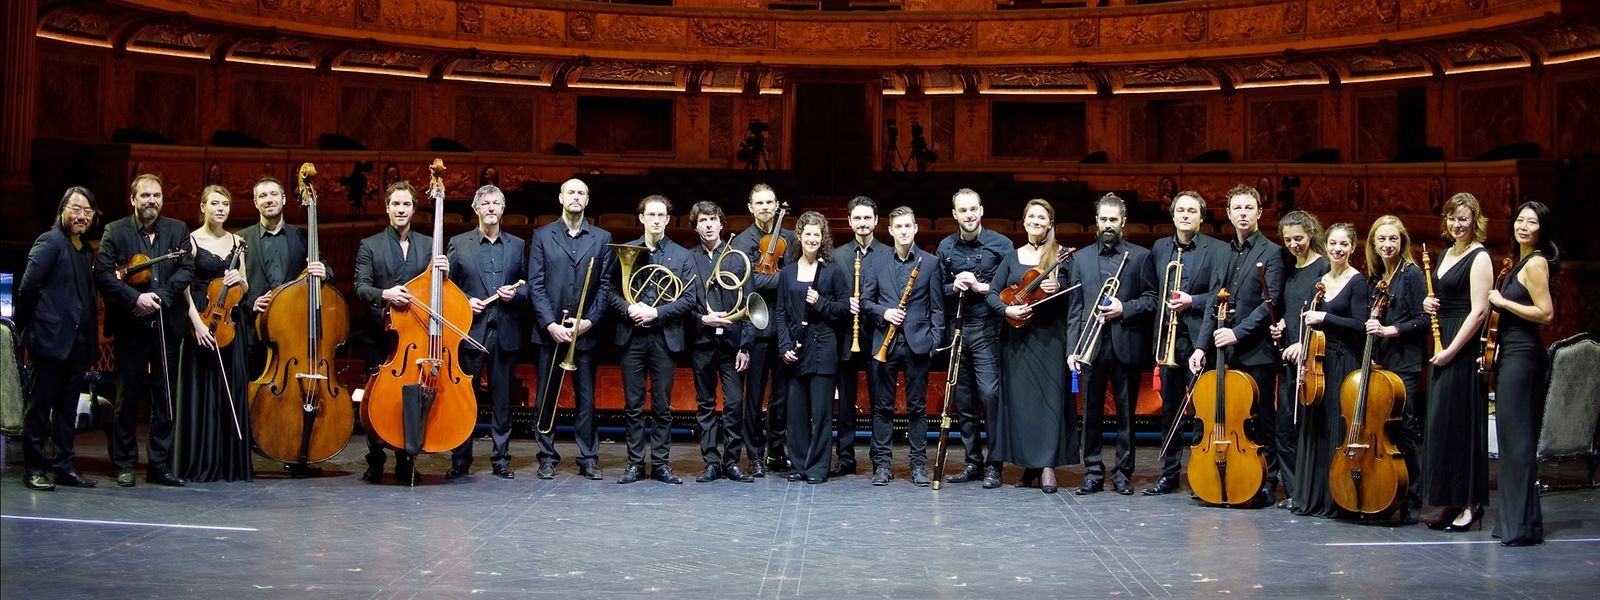 A orquestra da Royal Opera de Versailles.
